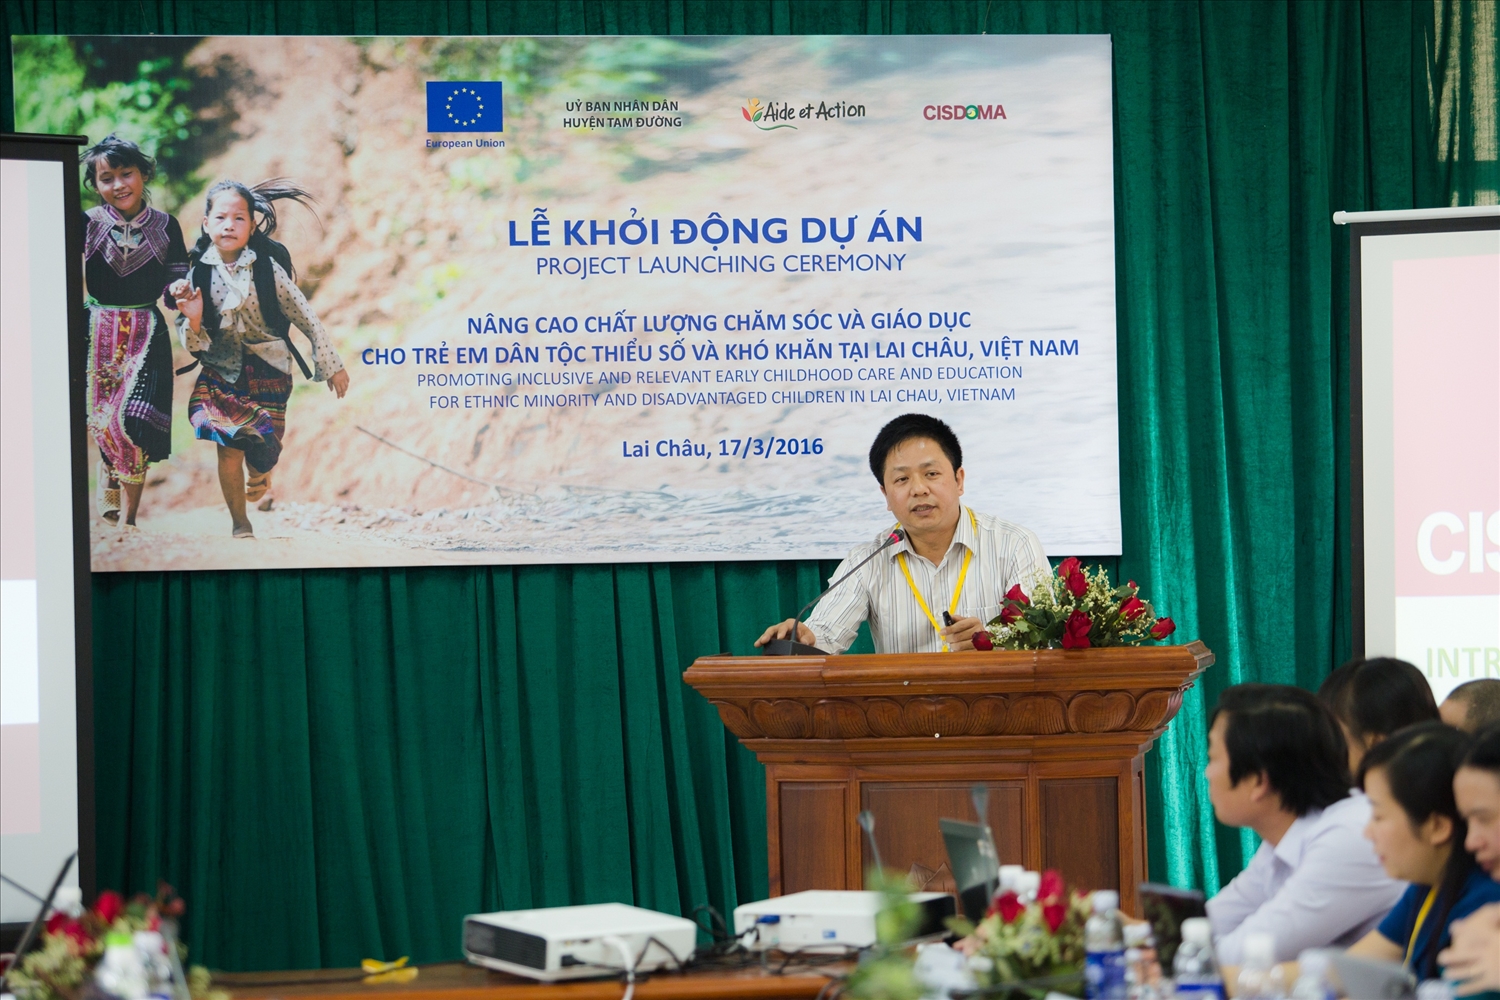 Giai đoạn 2016 - 2020, trên địa bàn tỉnh Lai Châu có 09 tổ chức PCPNN tài trợ 16 chương trình, dự án, với tổng kinh phí hơn 124 tỷ đồng. (Nguồn ảnh: thongtindoingoaiaichau.gov.vn)